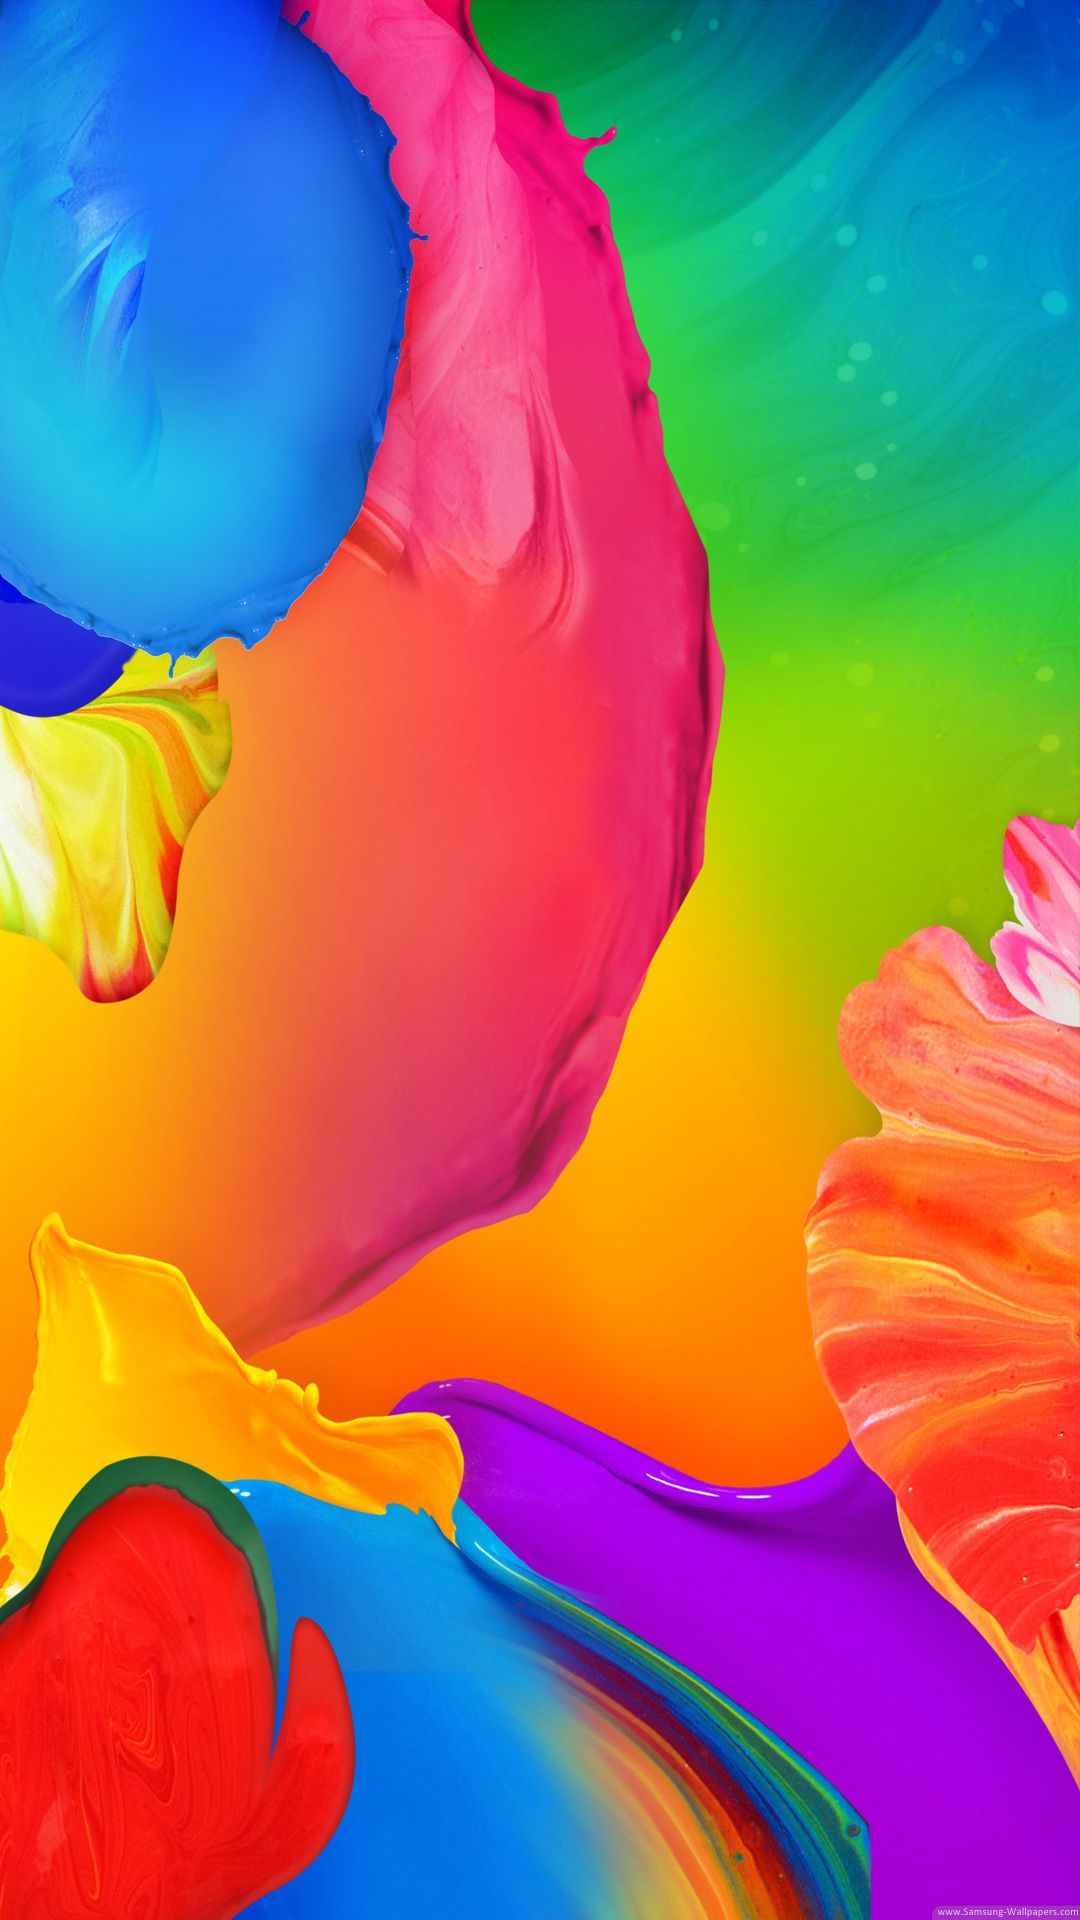 Samsung Colorful Wallpapers - Top Những Hình Ảnh Đẹp